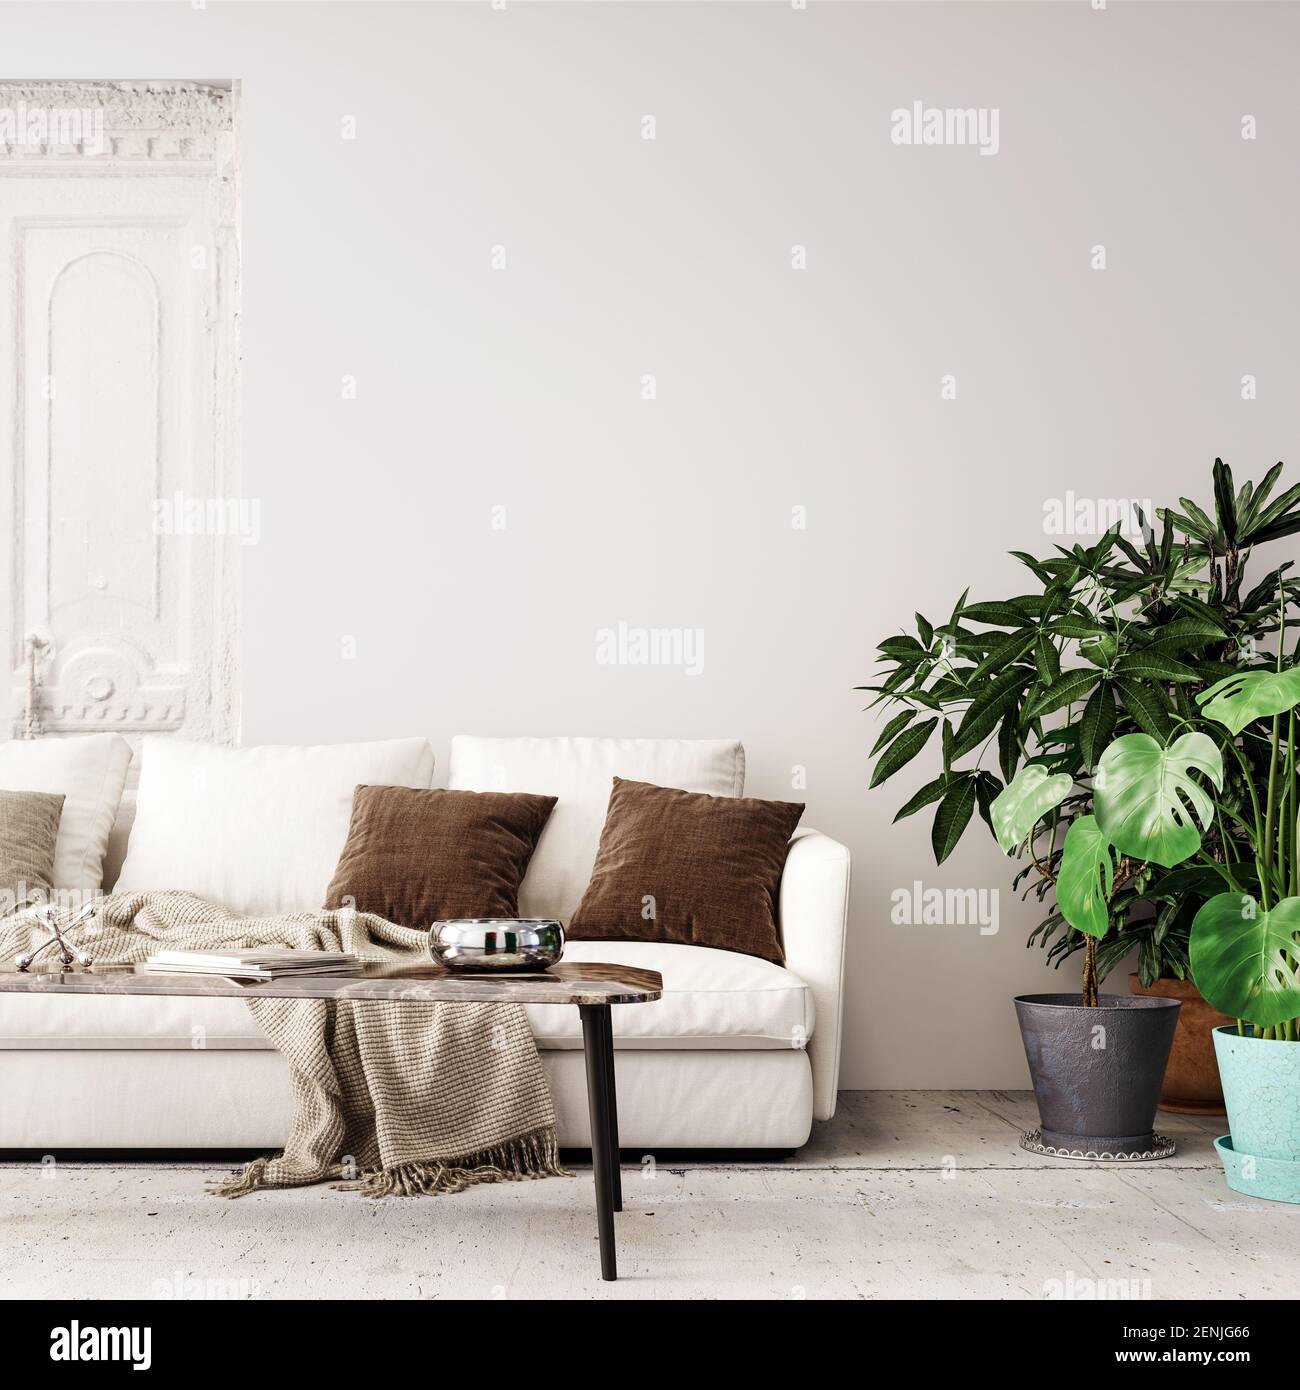 Interni dal design moderno con pareti bianche vuote e pareti in mock-up e piante decorative per la casa rendering 3D, illustrazione 3D Foto Stock